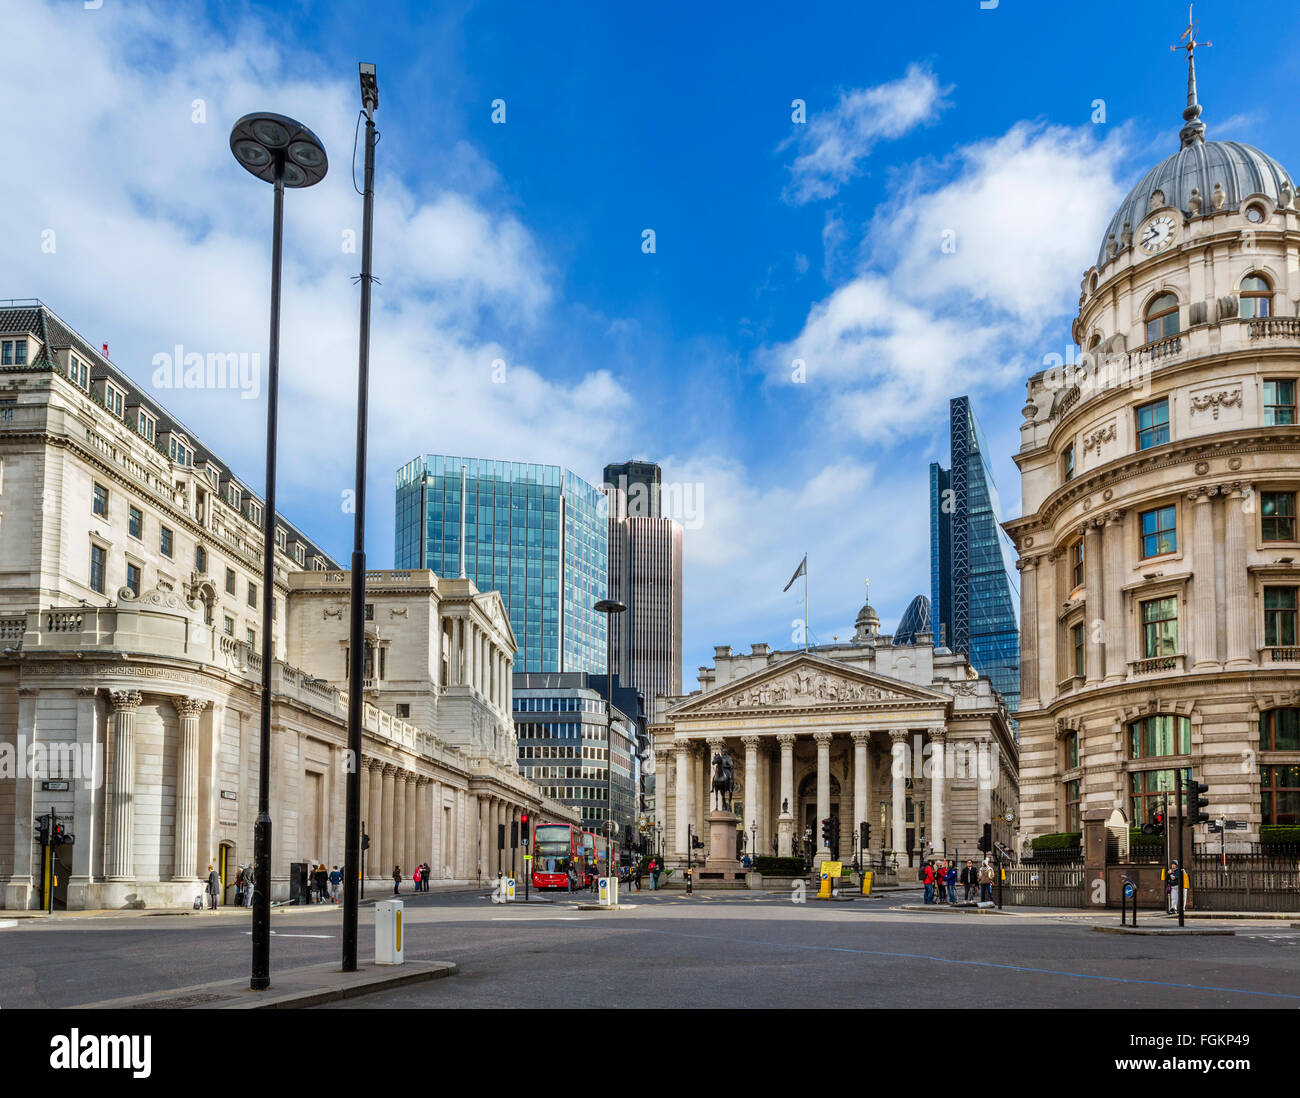 Ville de Londres (financial district) de l'hôtel particulier Maison St avec Banque d'Angleterre (à gauche) et Royal Exchange (centre), London, UK Banque D'Images